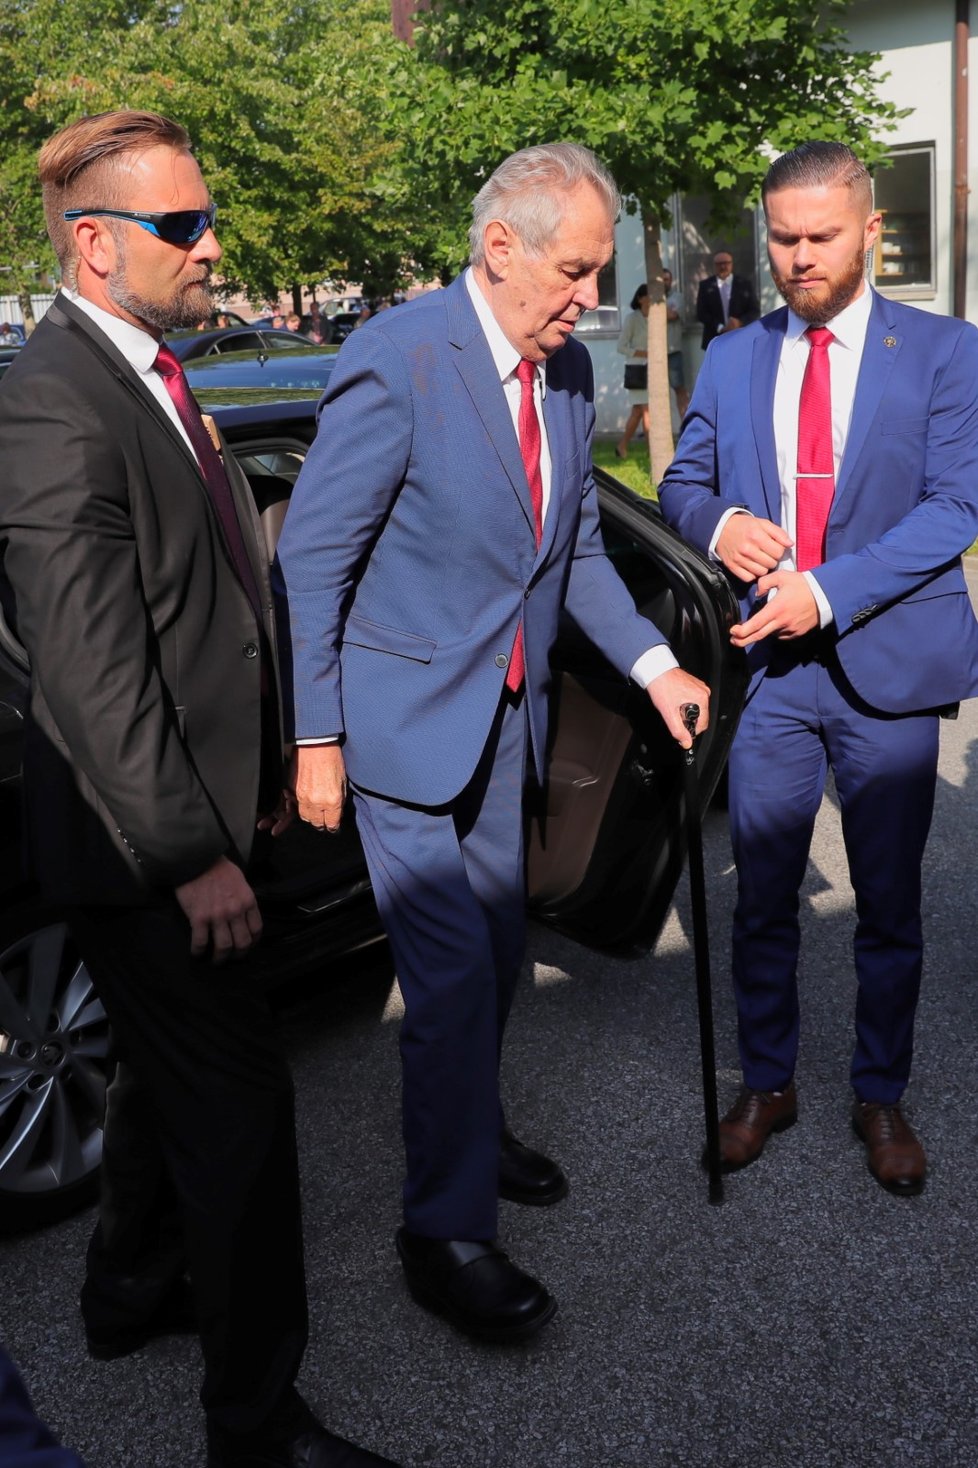 Prezident Miloš Zeman dorazil na Zemi živitelku (22.08.2019) aby ji zahájil projevem